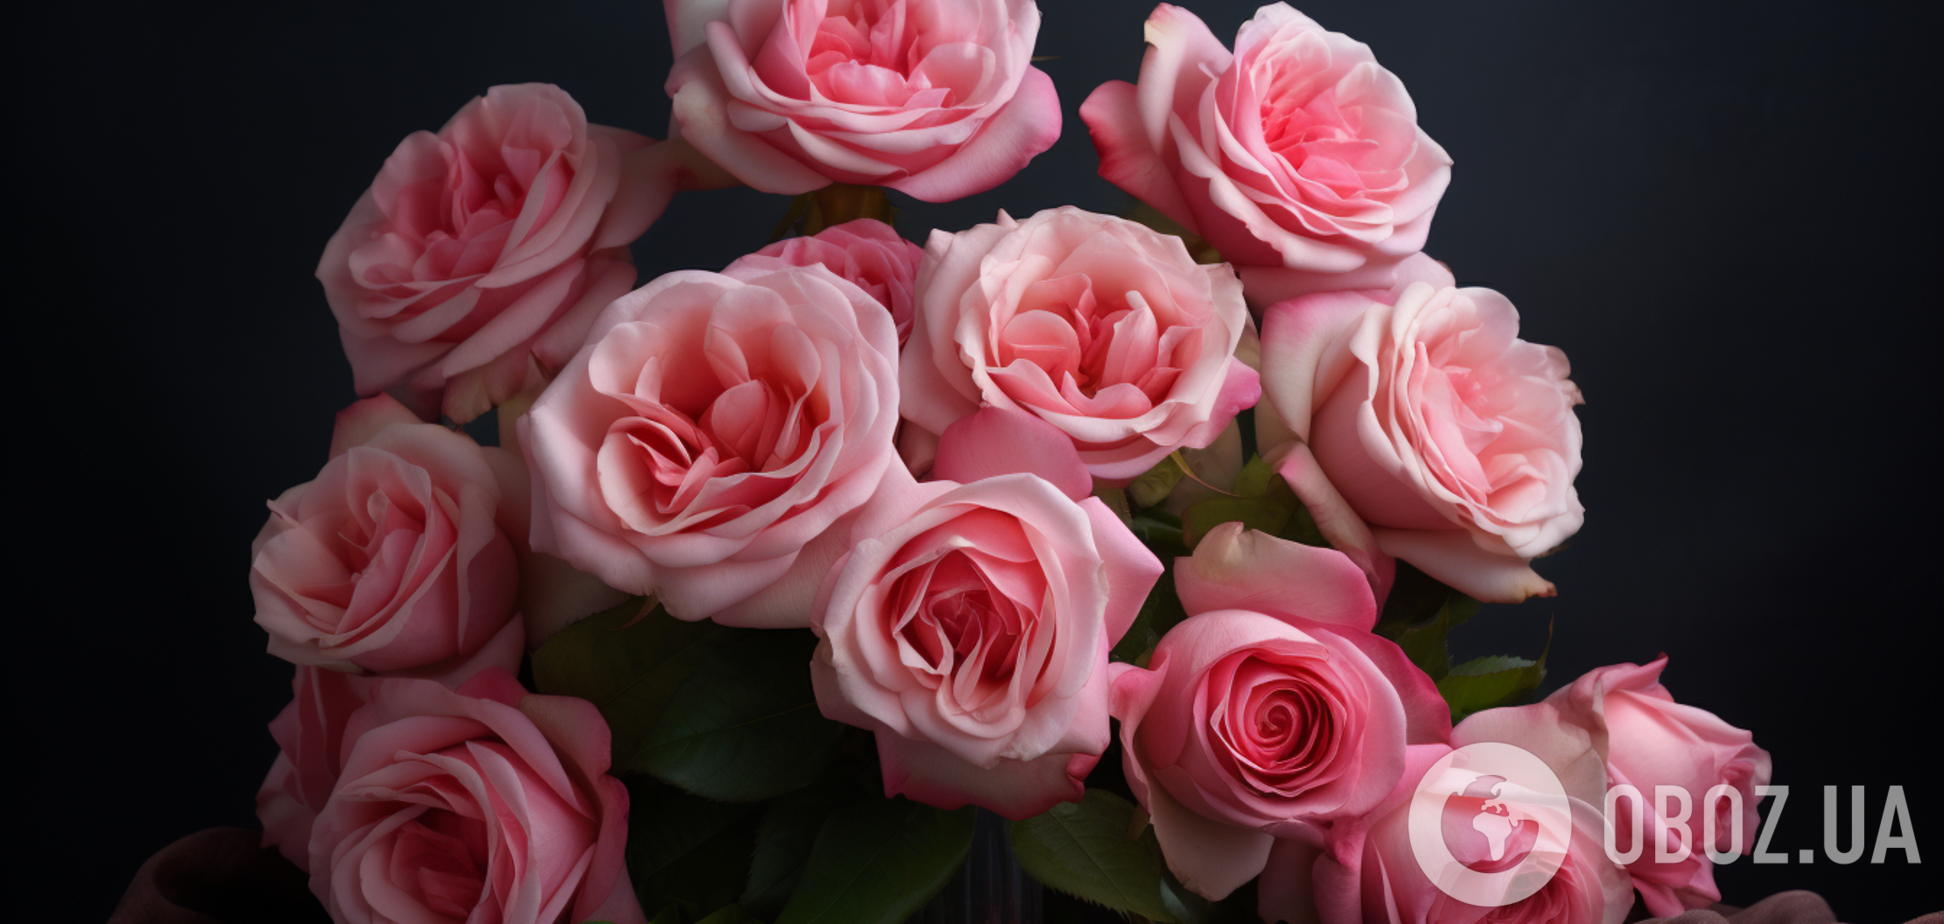 Рекомендації по використанню пелюсток троянди в медицині